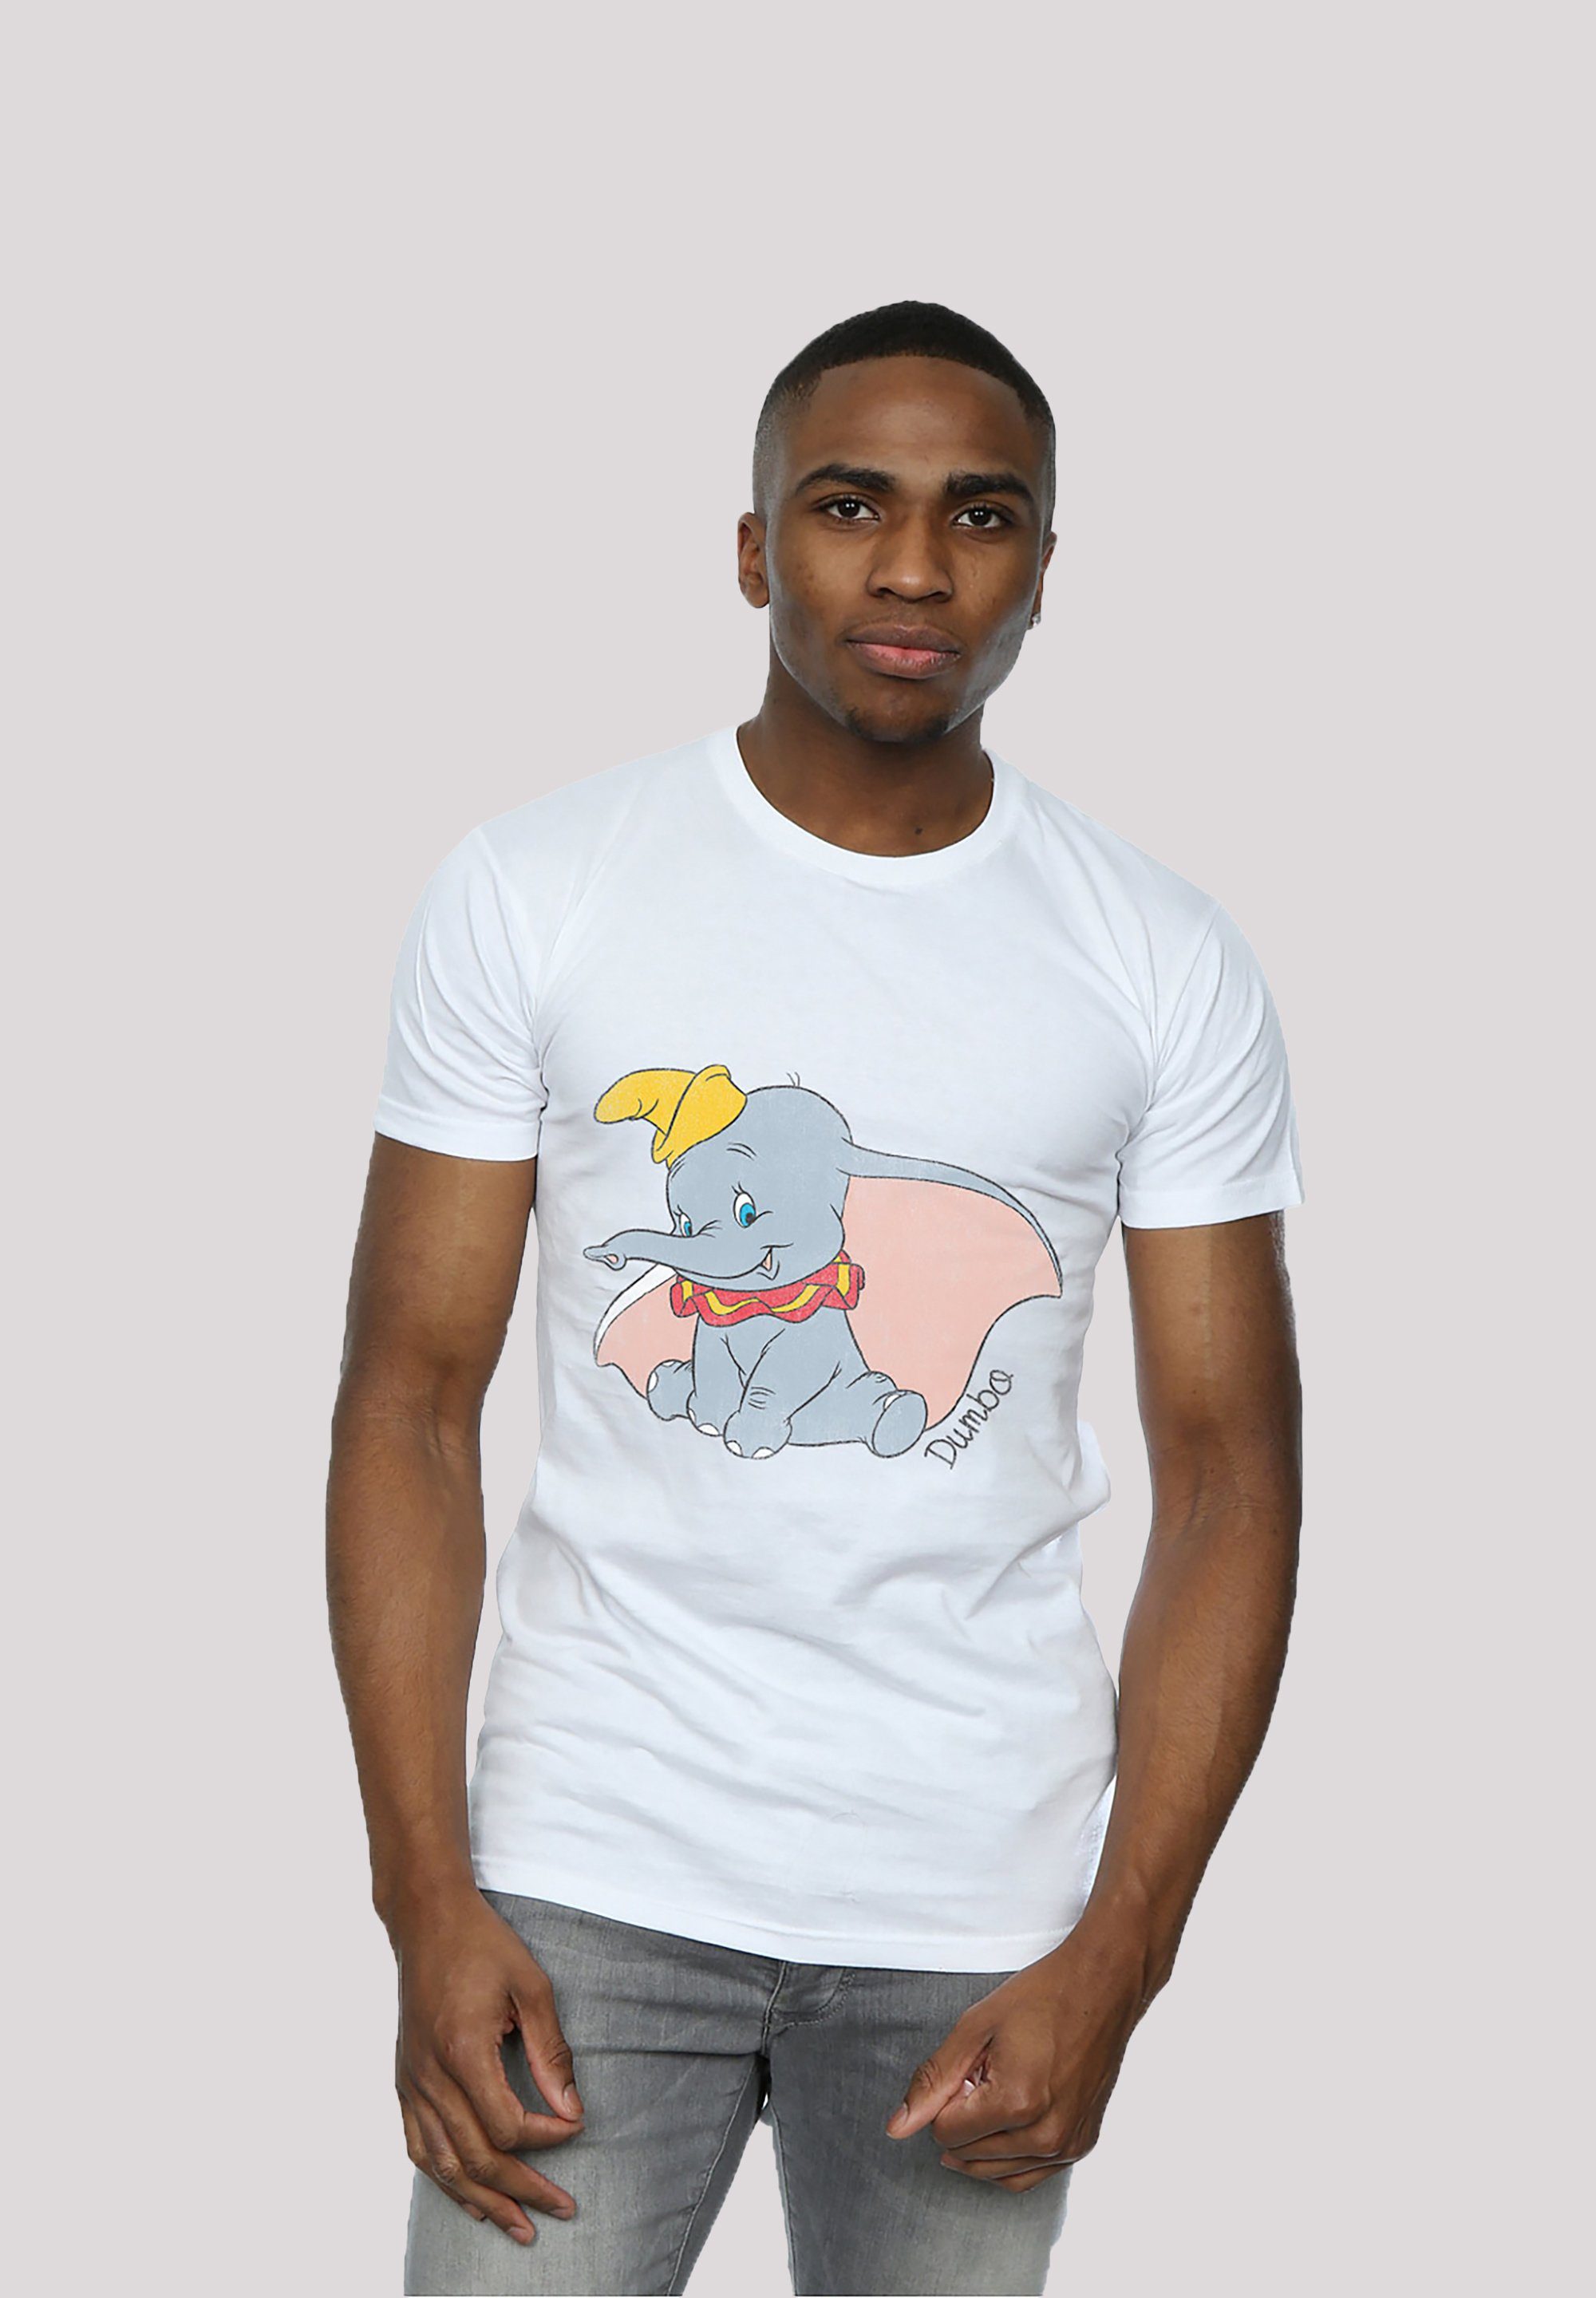 F4NT4STIC T-Shirt Dumbo Print Classic Disney